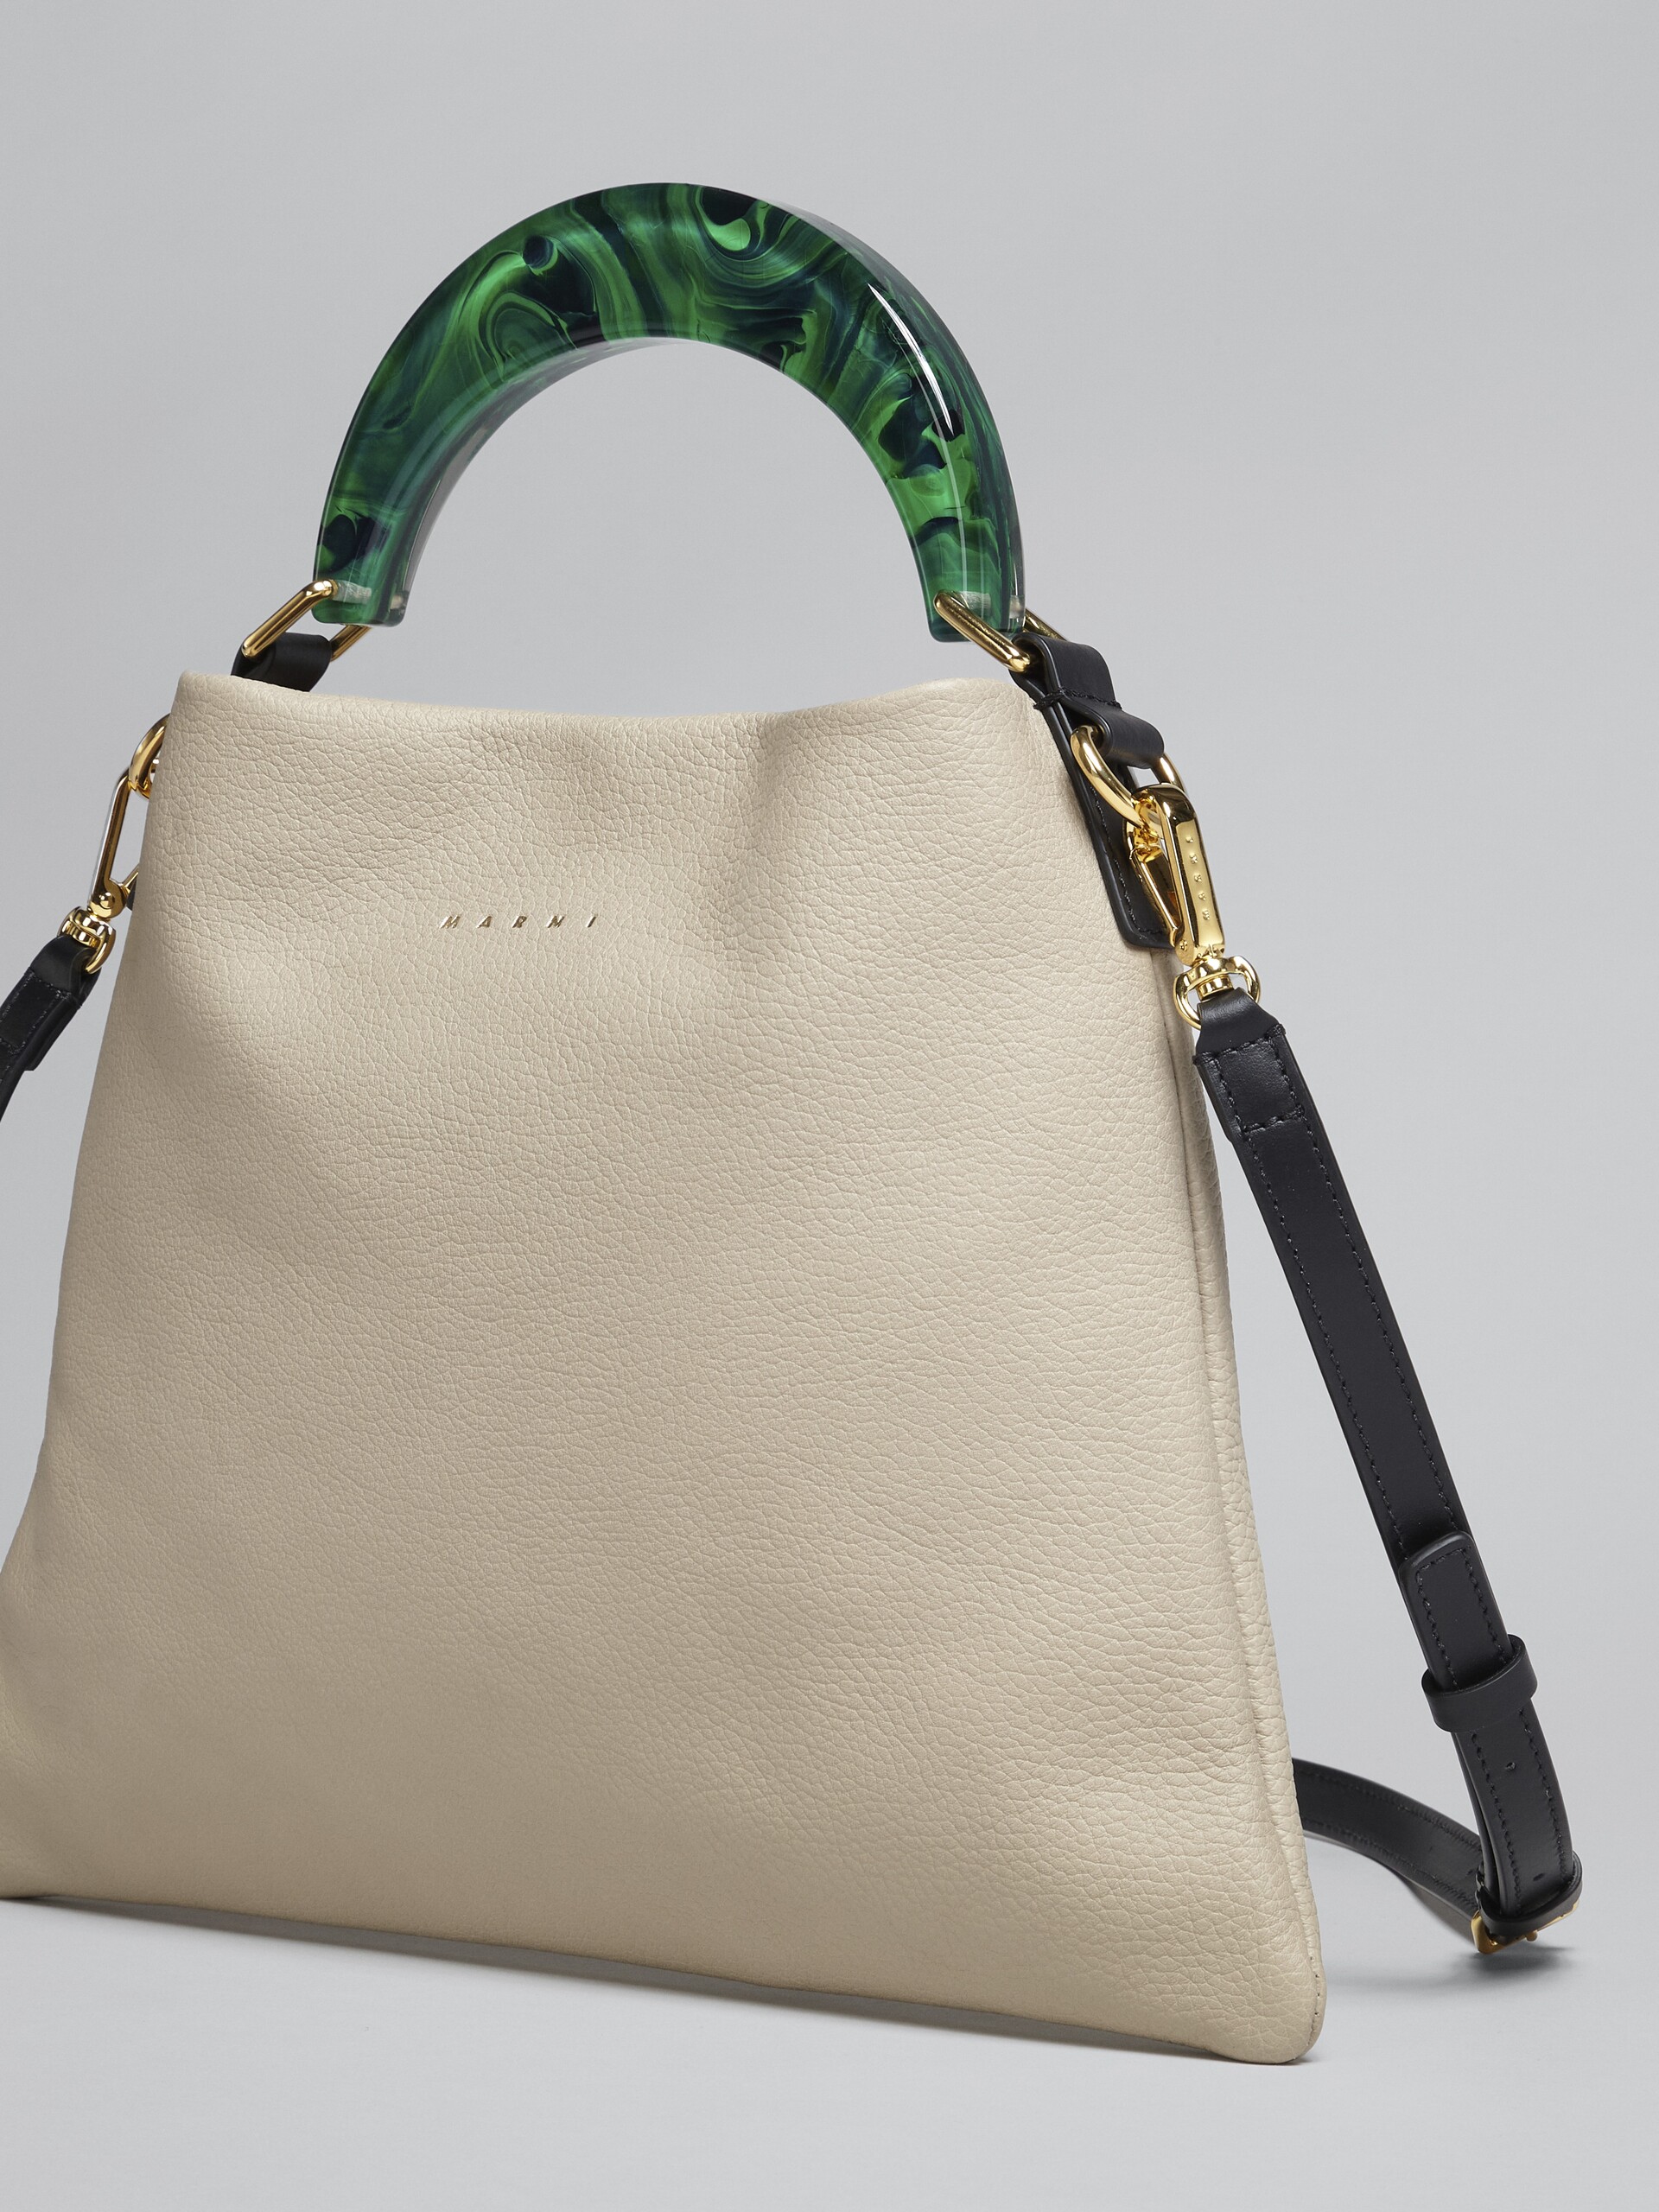 Venice small bag in beige leather - Shoulder Bag - Image 5